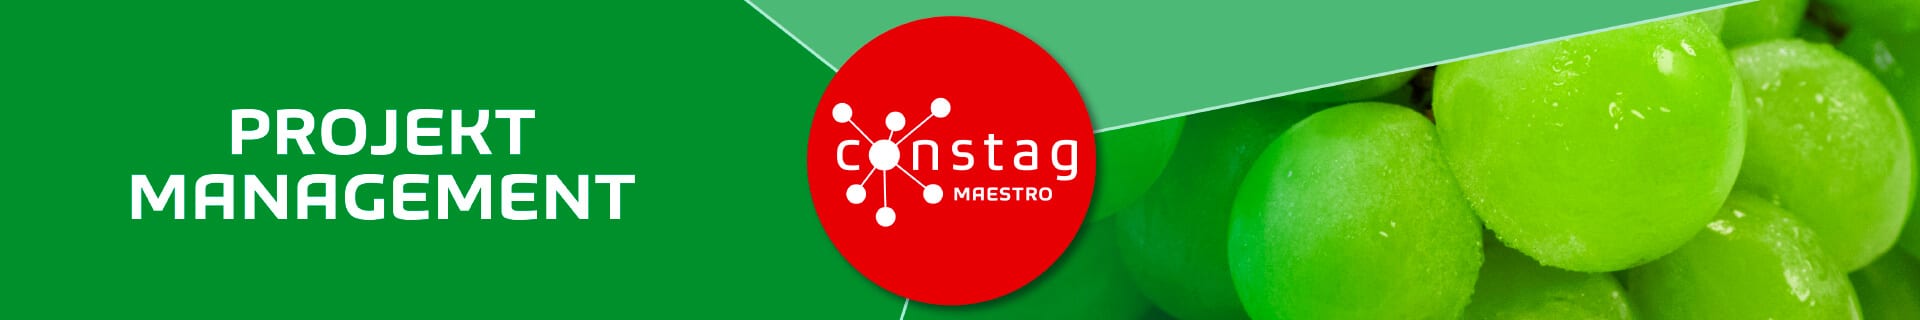 Constag Produkte Projekt-Management MAESTRO